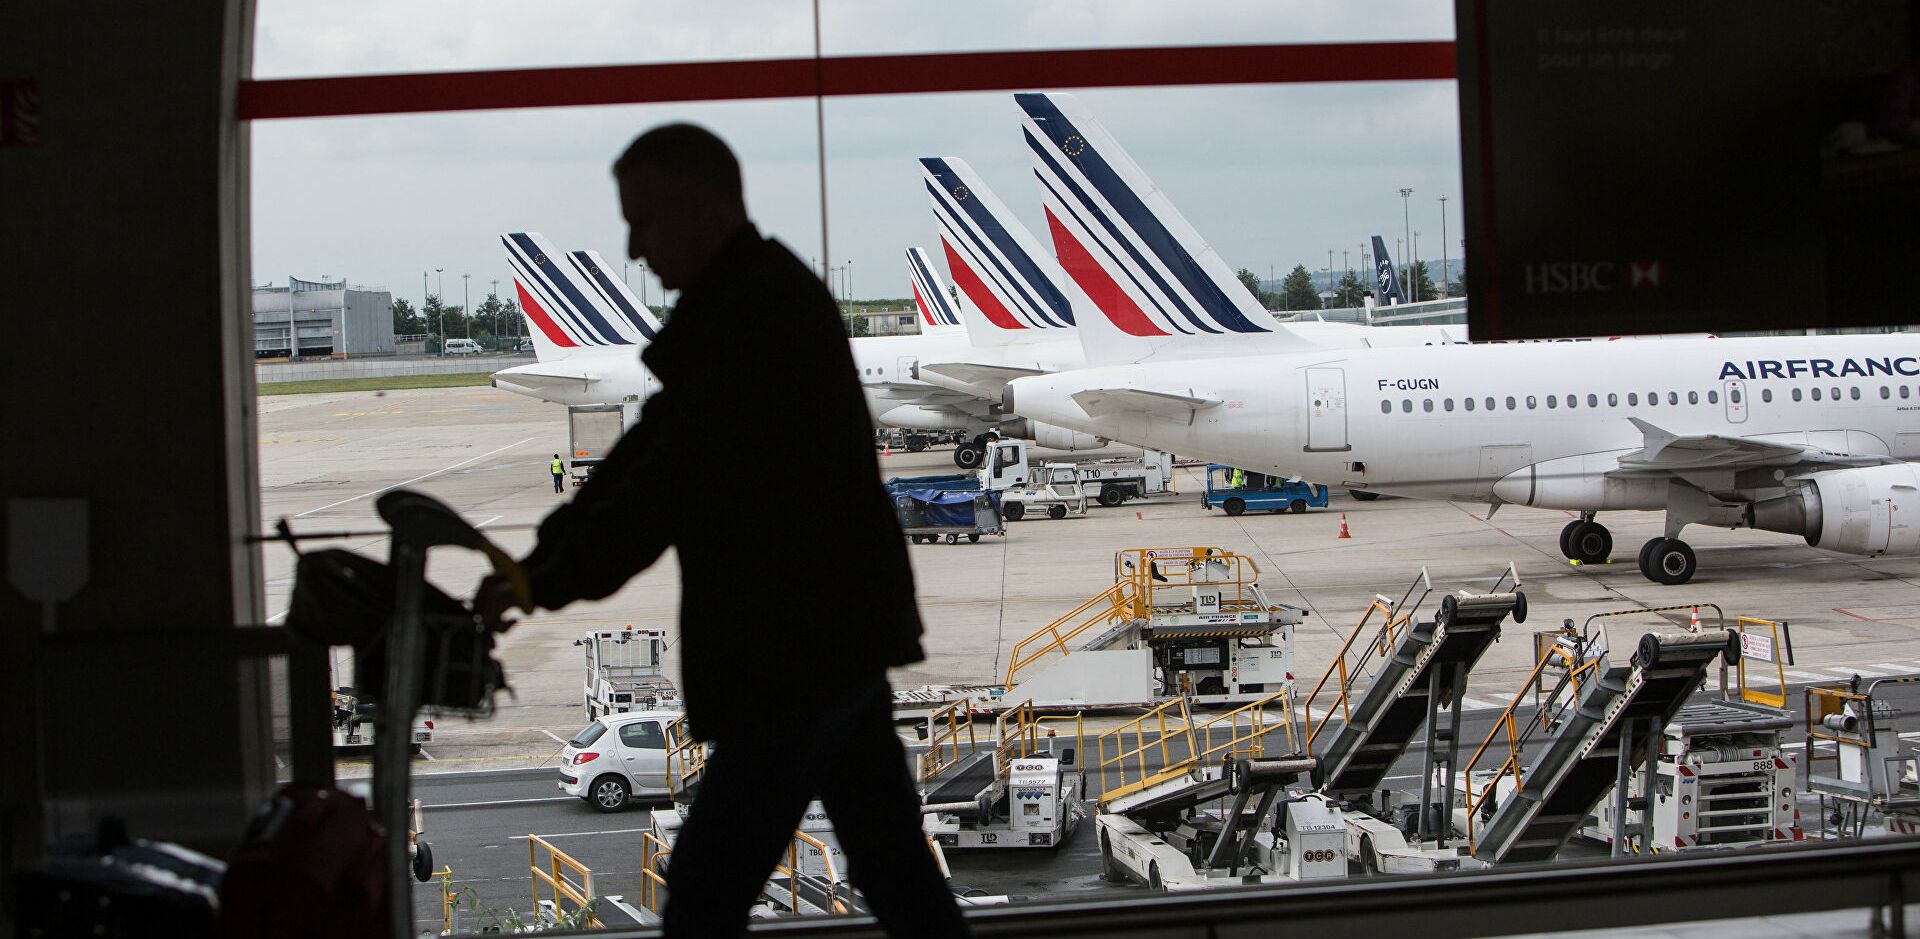 ВИП обслуживание в аэропортах Франции